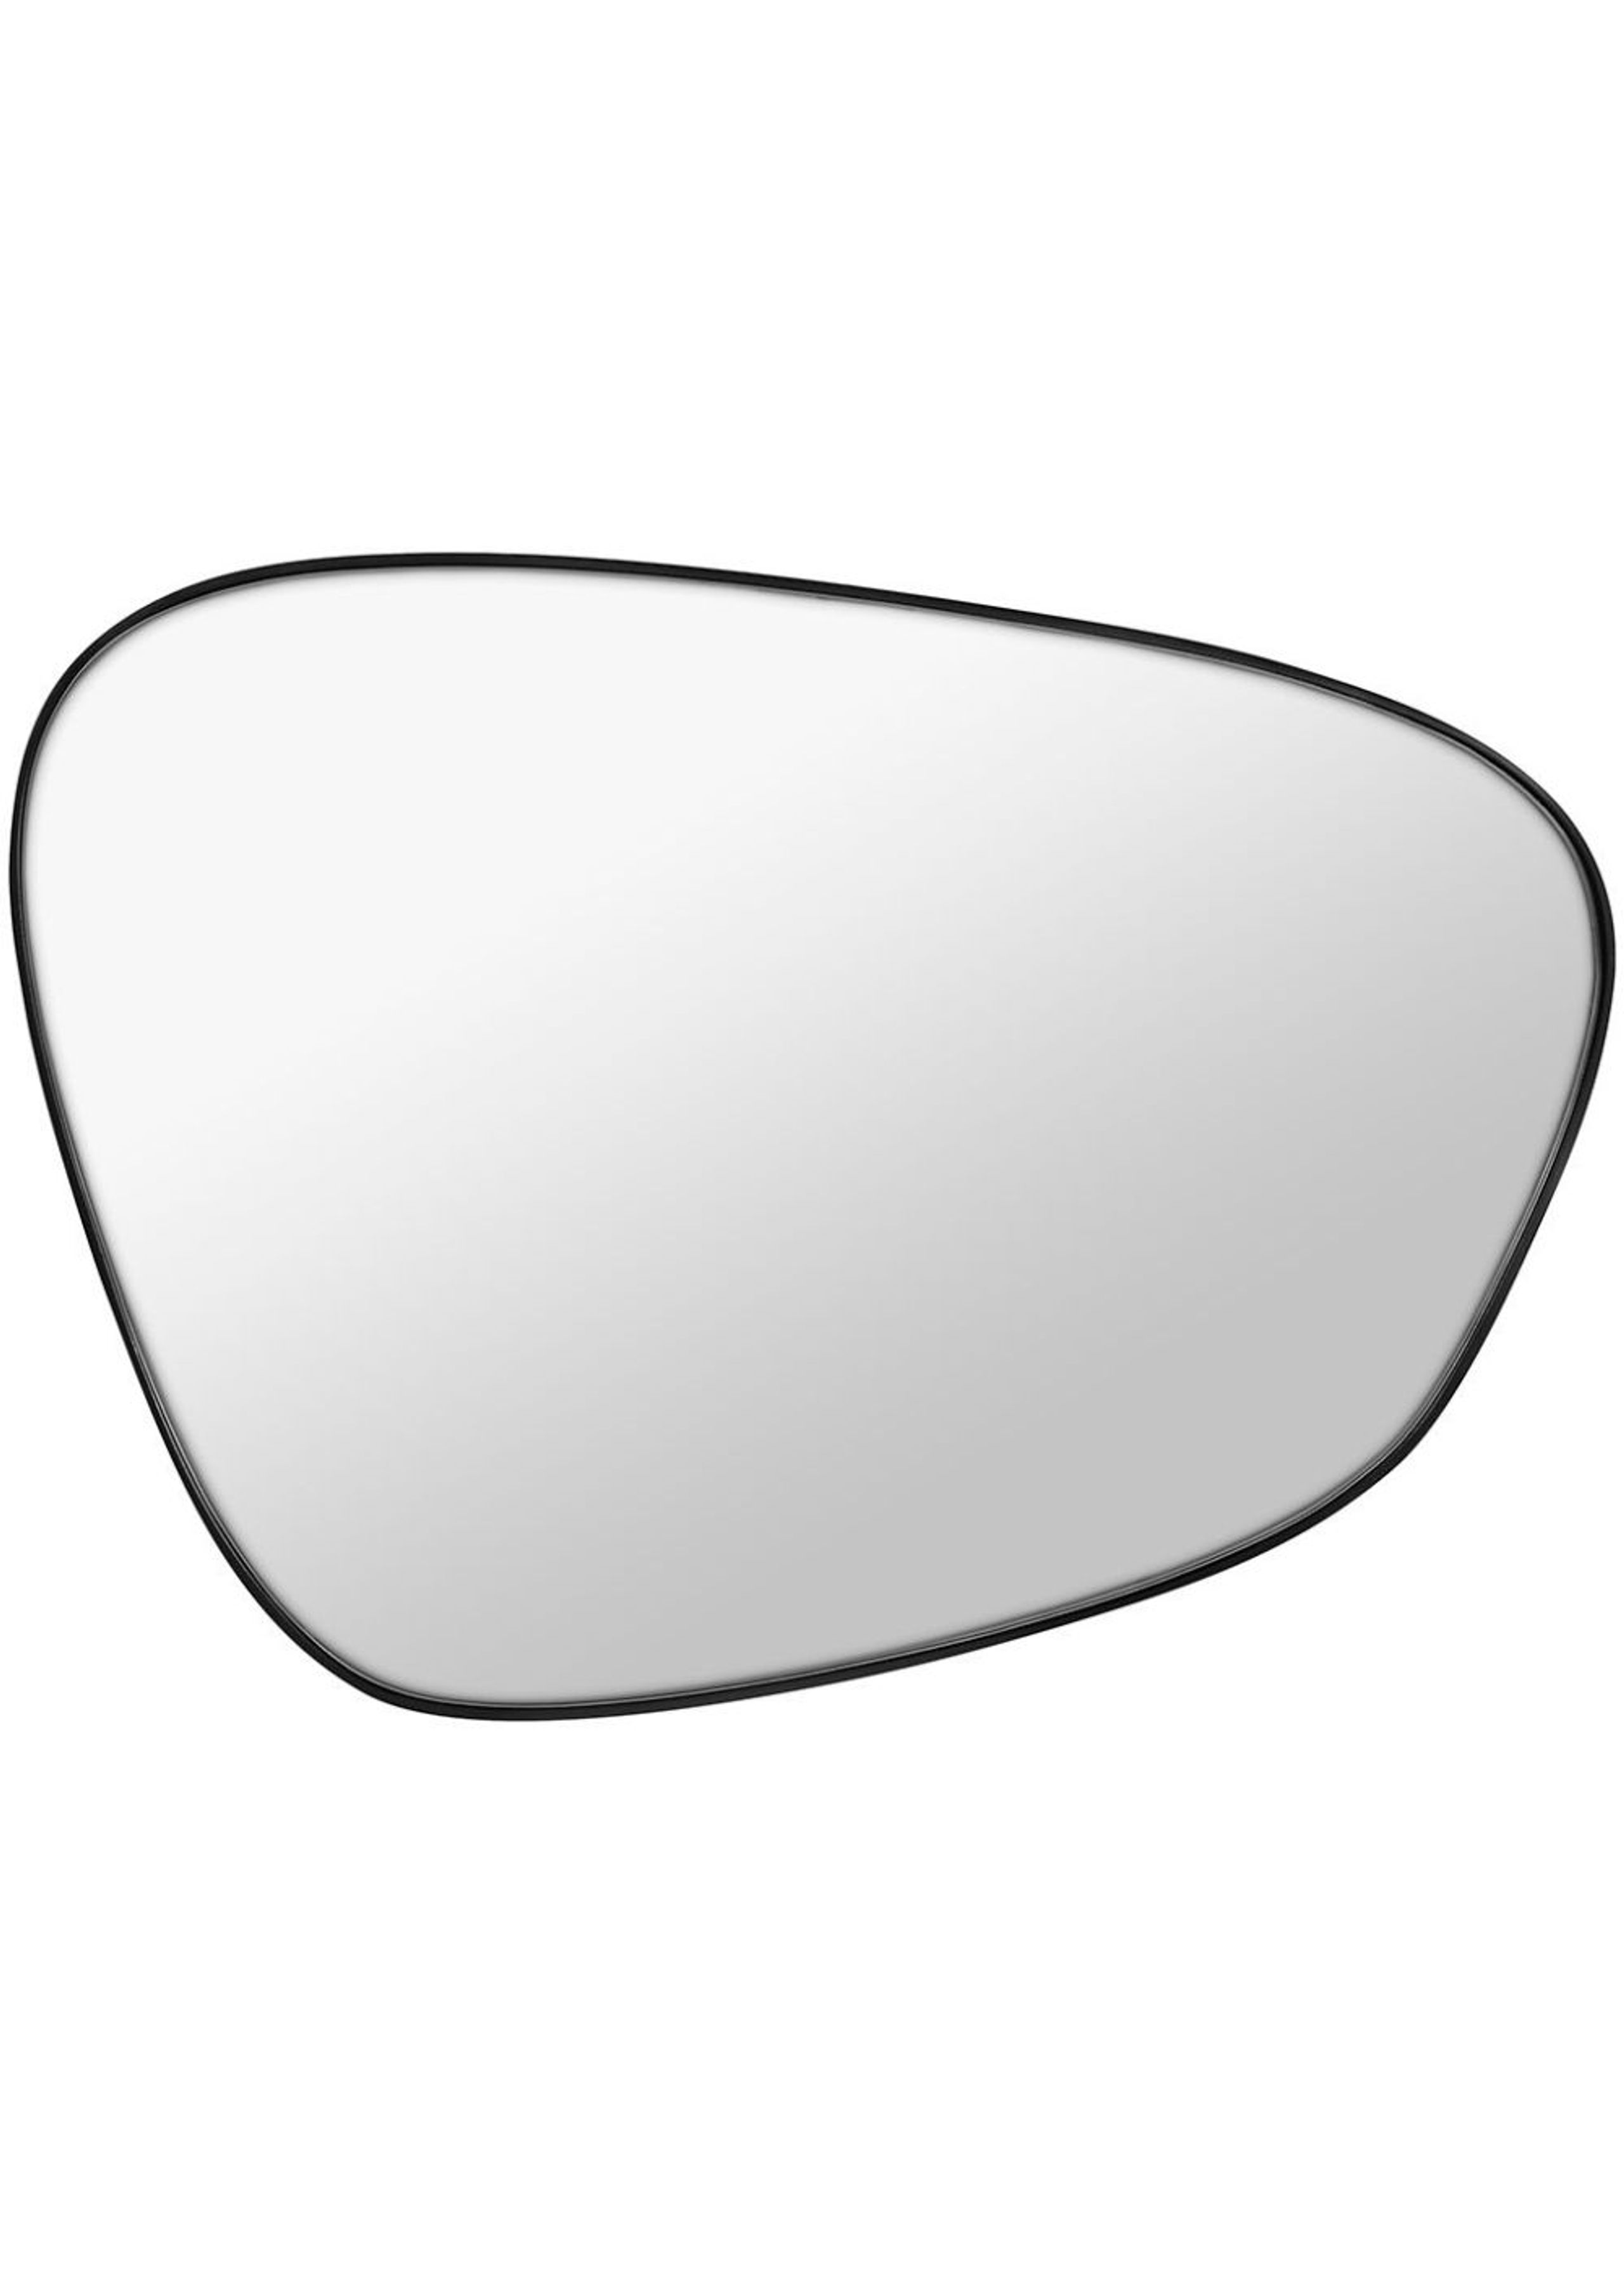 Mette Ditmer - Mirror - FIGURA Mirror, large  - Black - Small